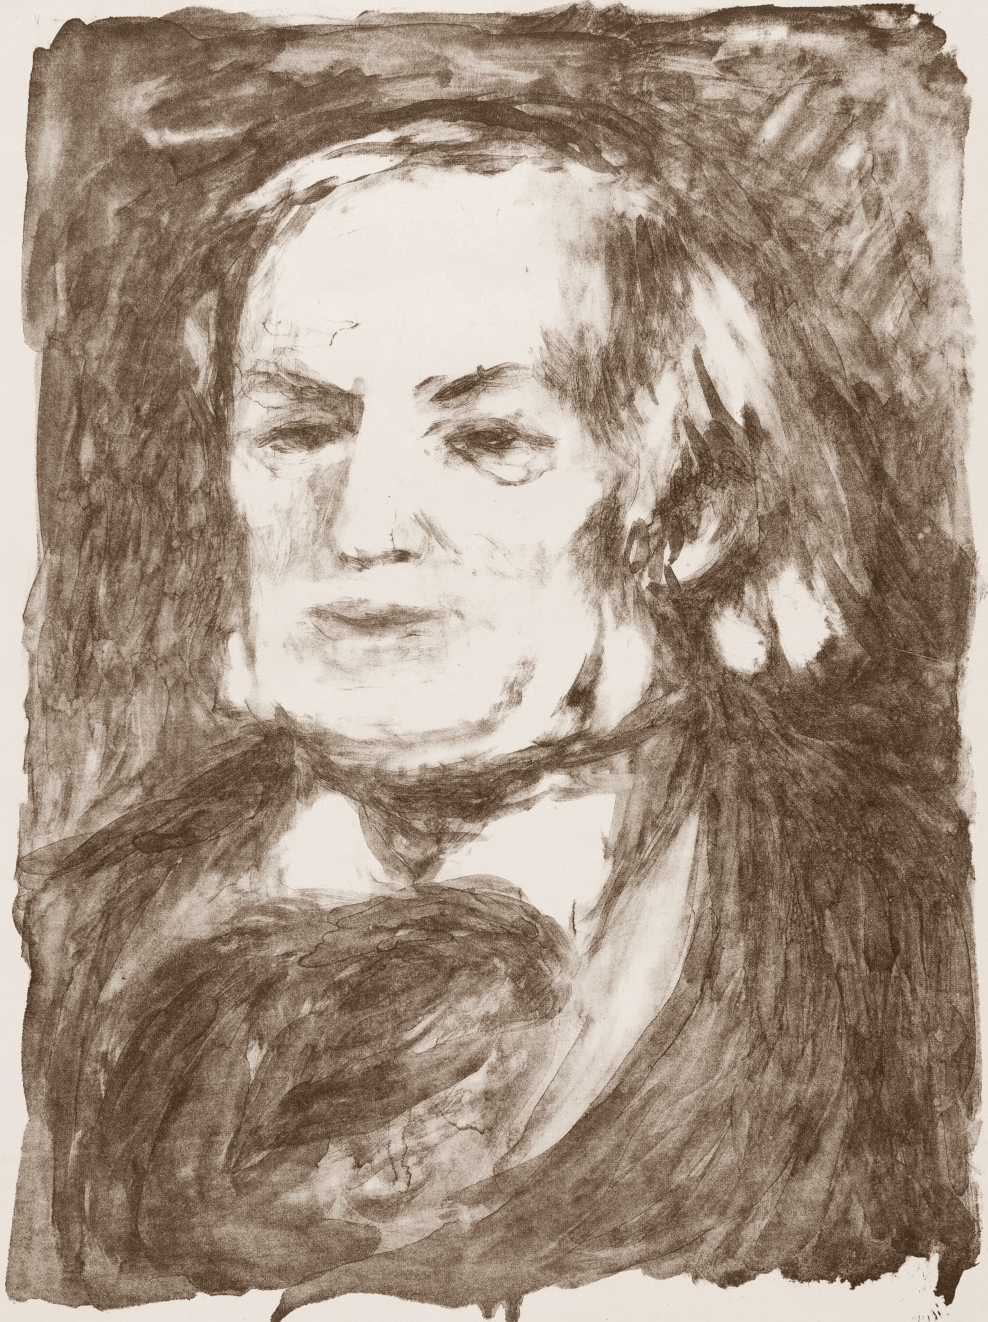 Pierre+Auguste+Renoir-1841-1-19 (861).jpg